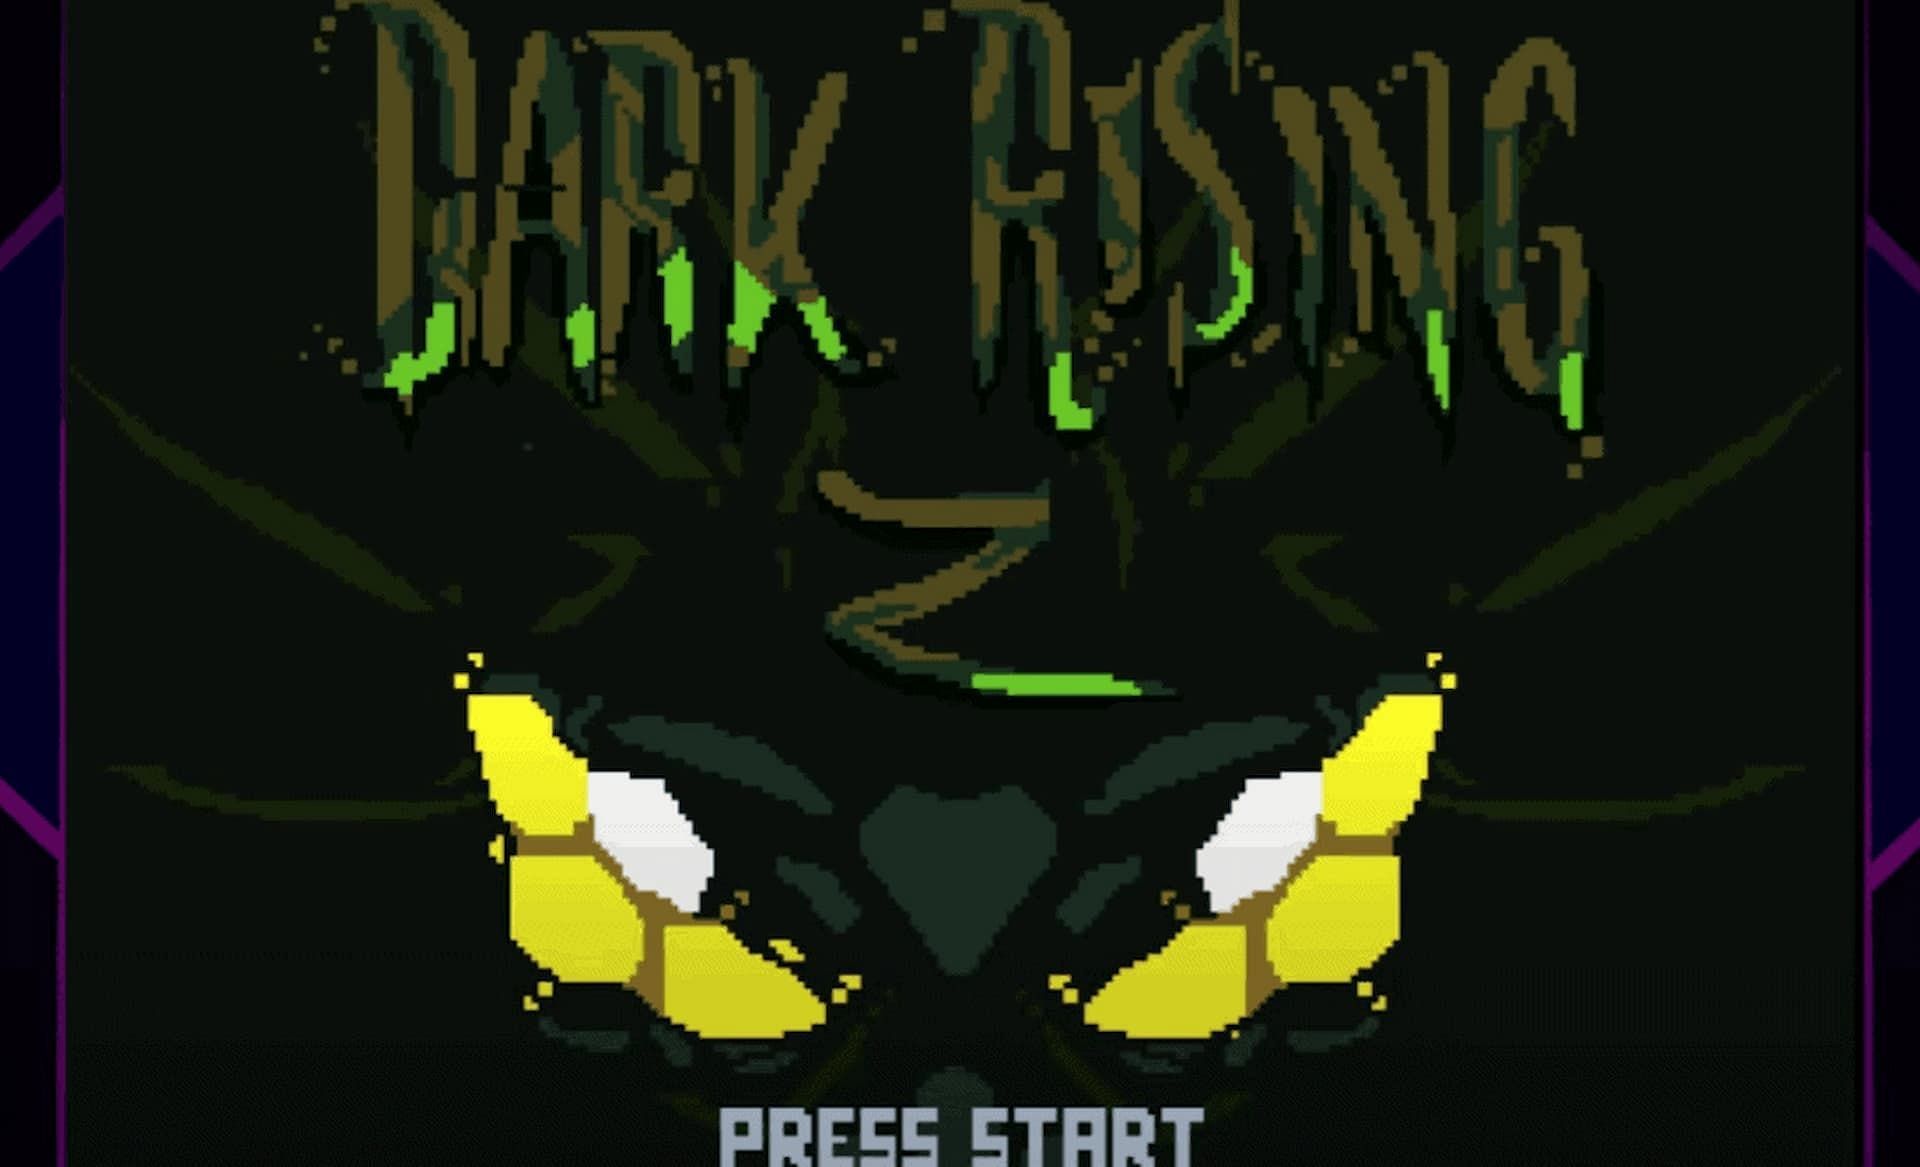 Title screen of Dark Rising (Image via DarkRisingGirl)